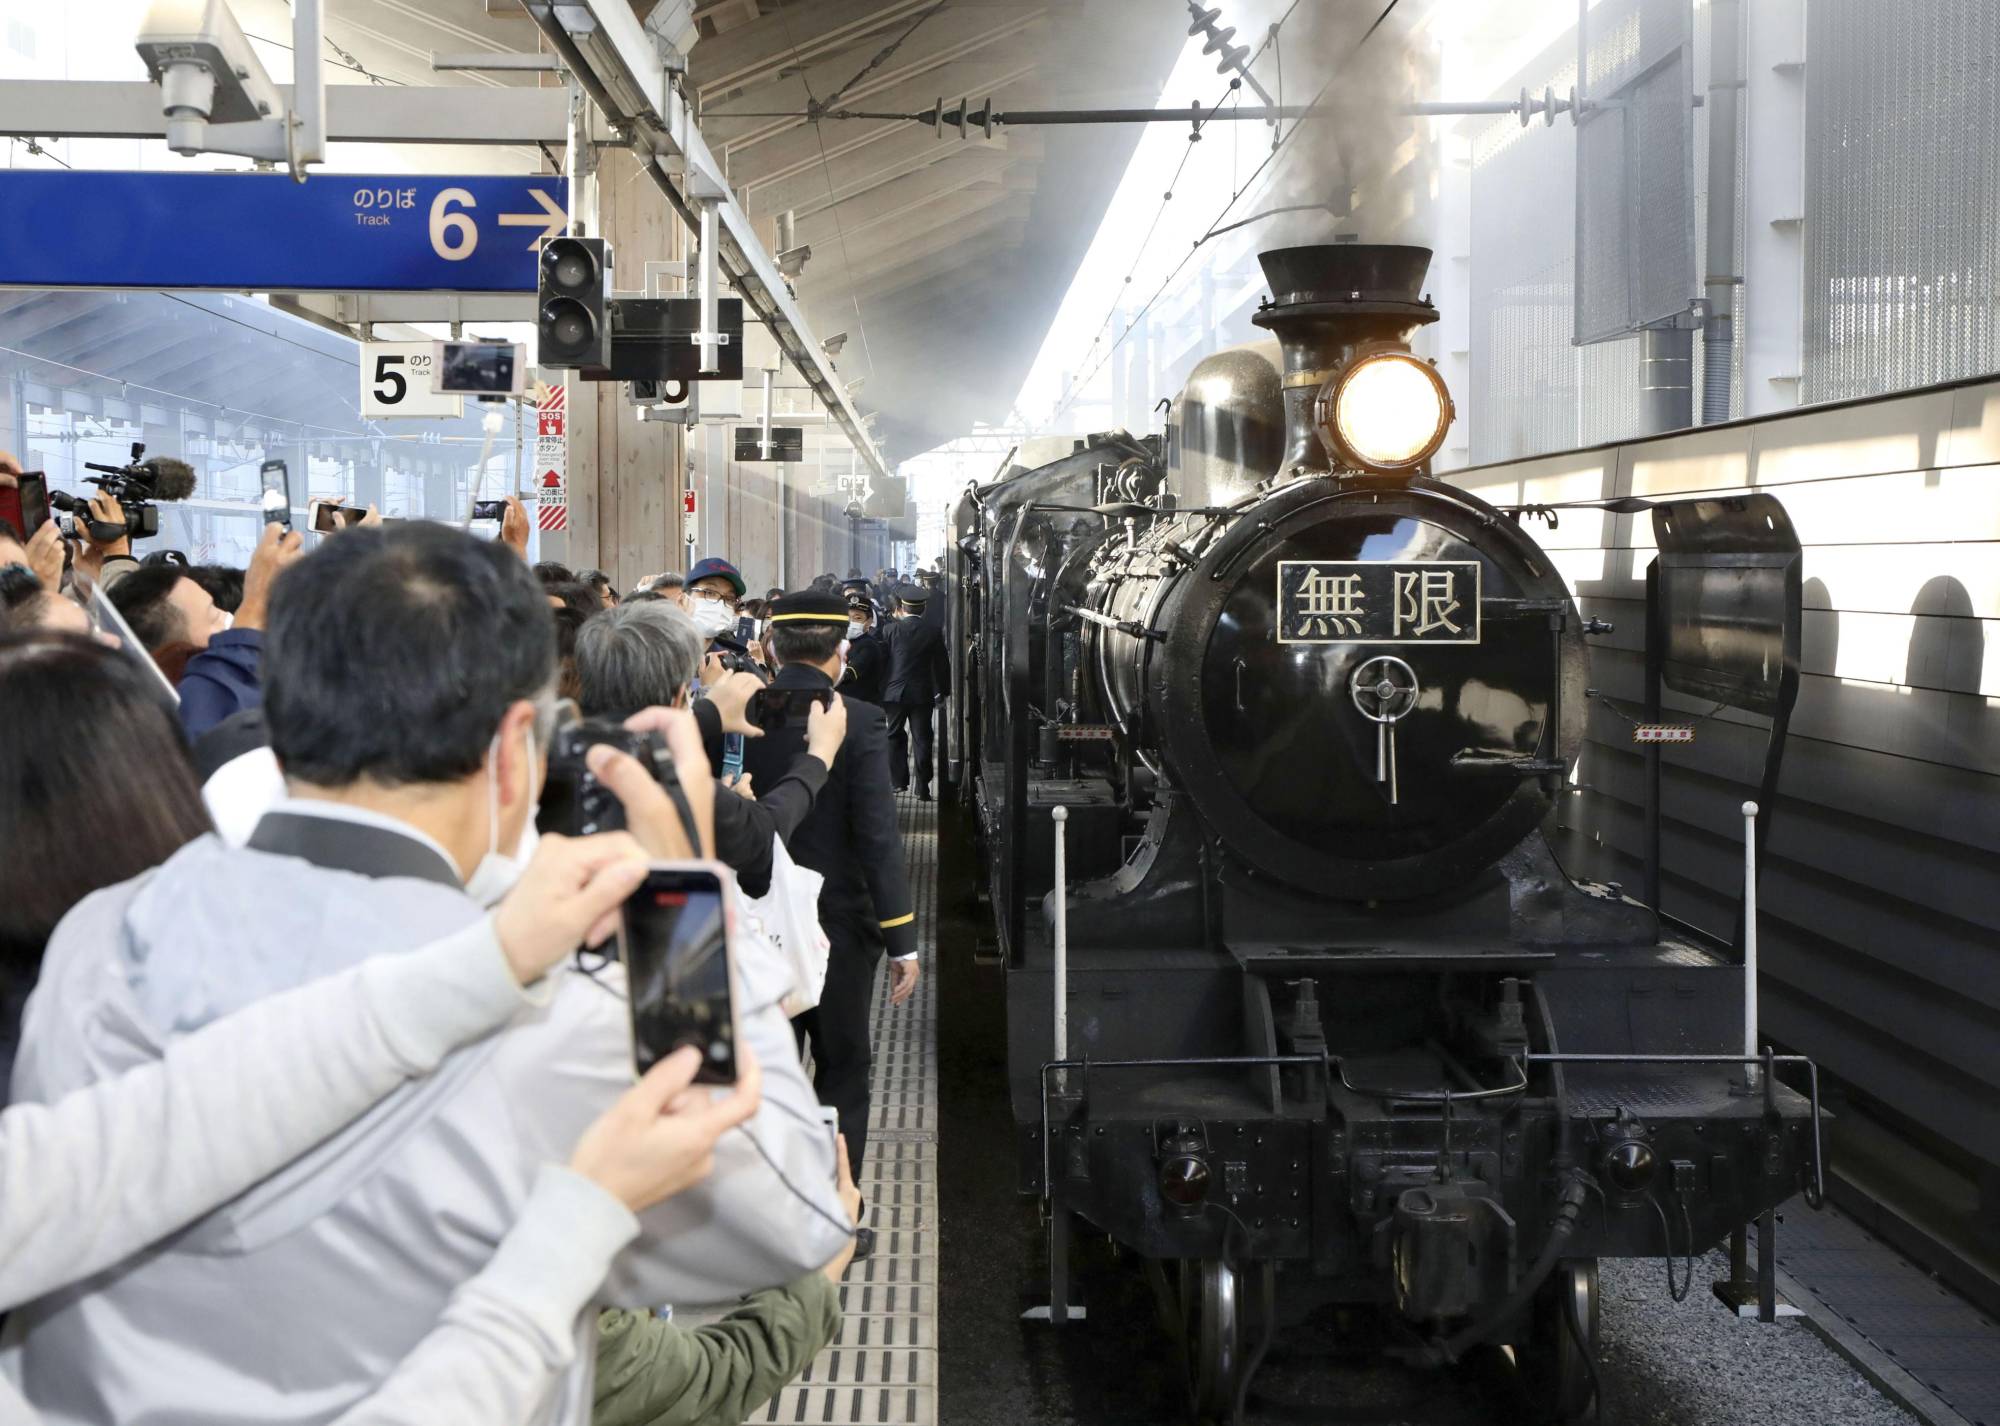 Rangkaian kereta uap bertemakan animasi Demon Slayer di Stasiun Kumamoto. Tampak karakter "Mugen" ( 無限) di bagian plat nomornya | Foto: KYODO via Japan Times